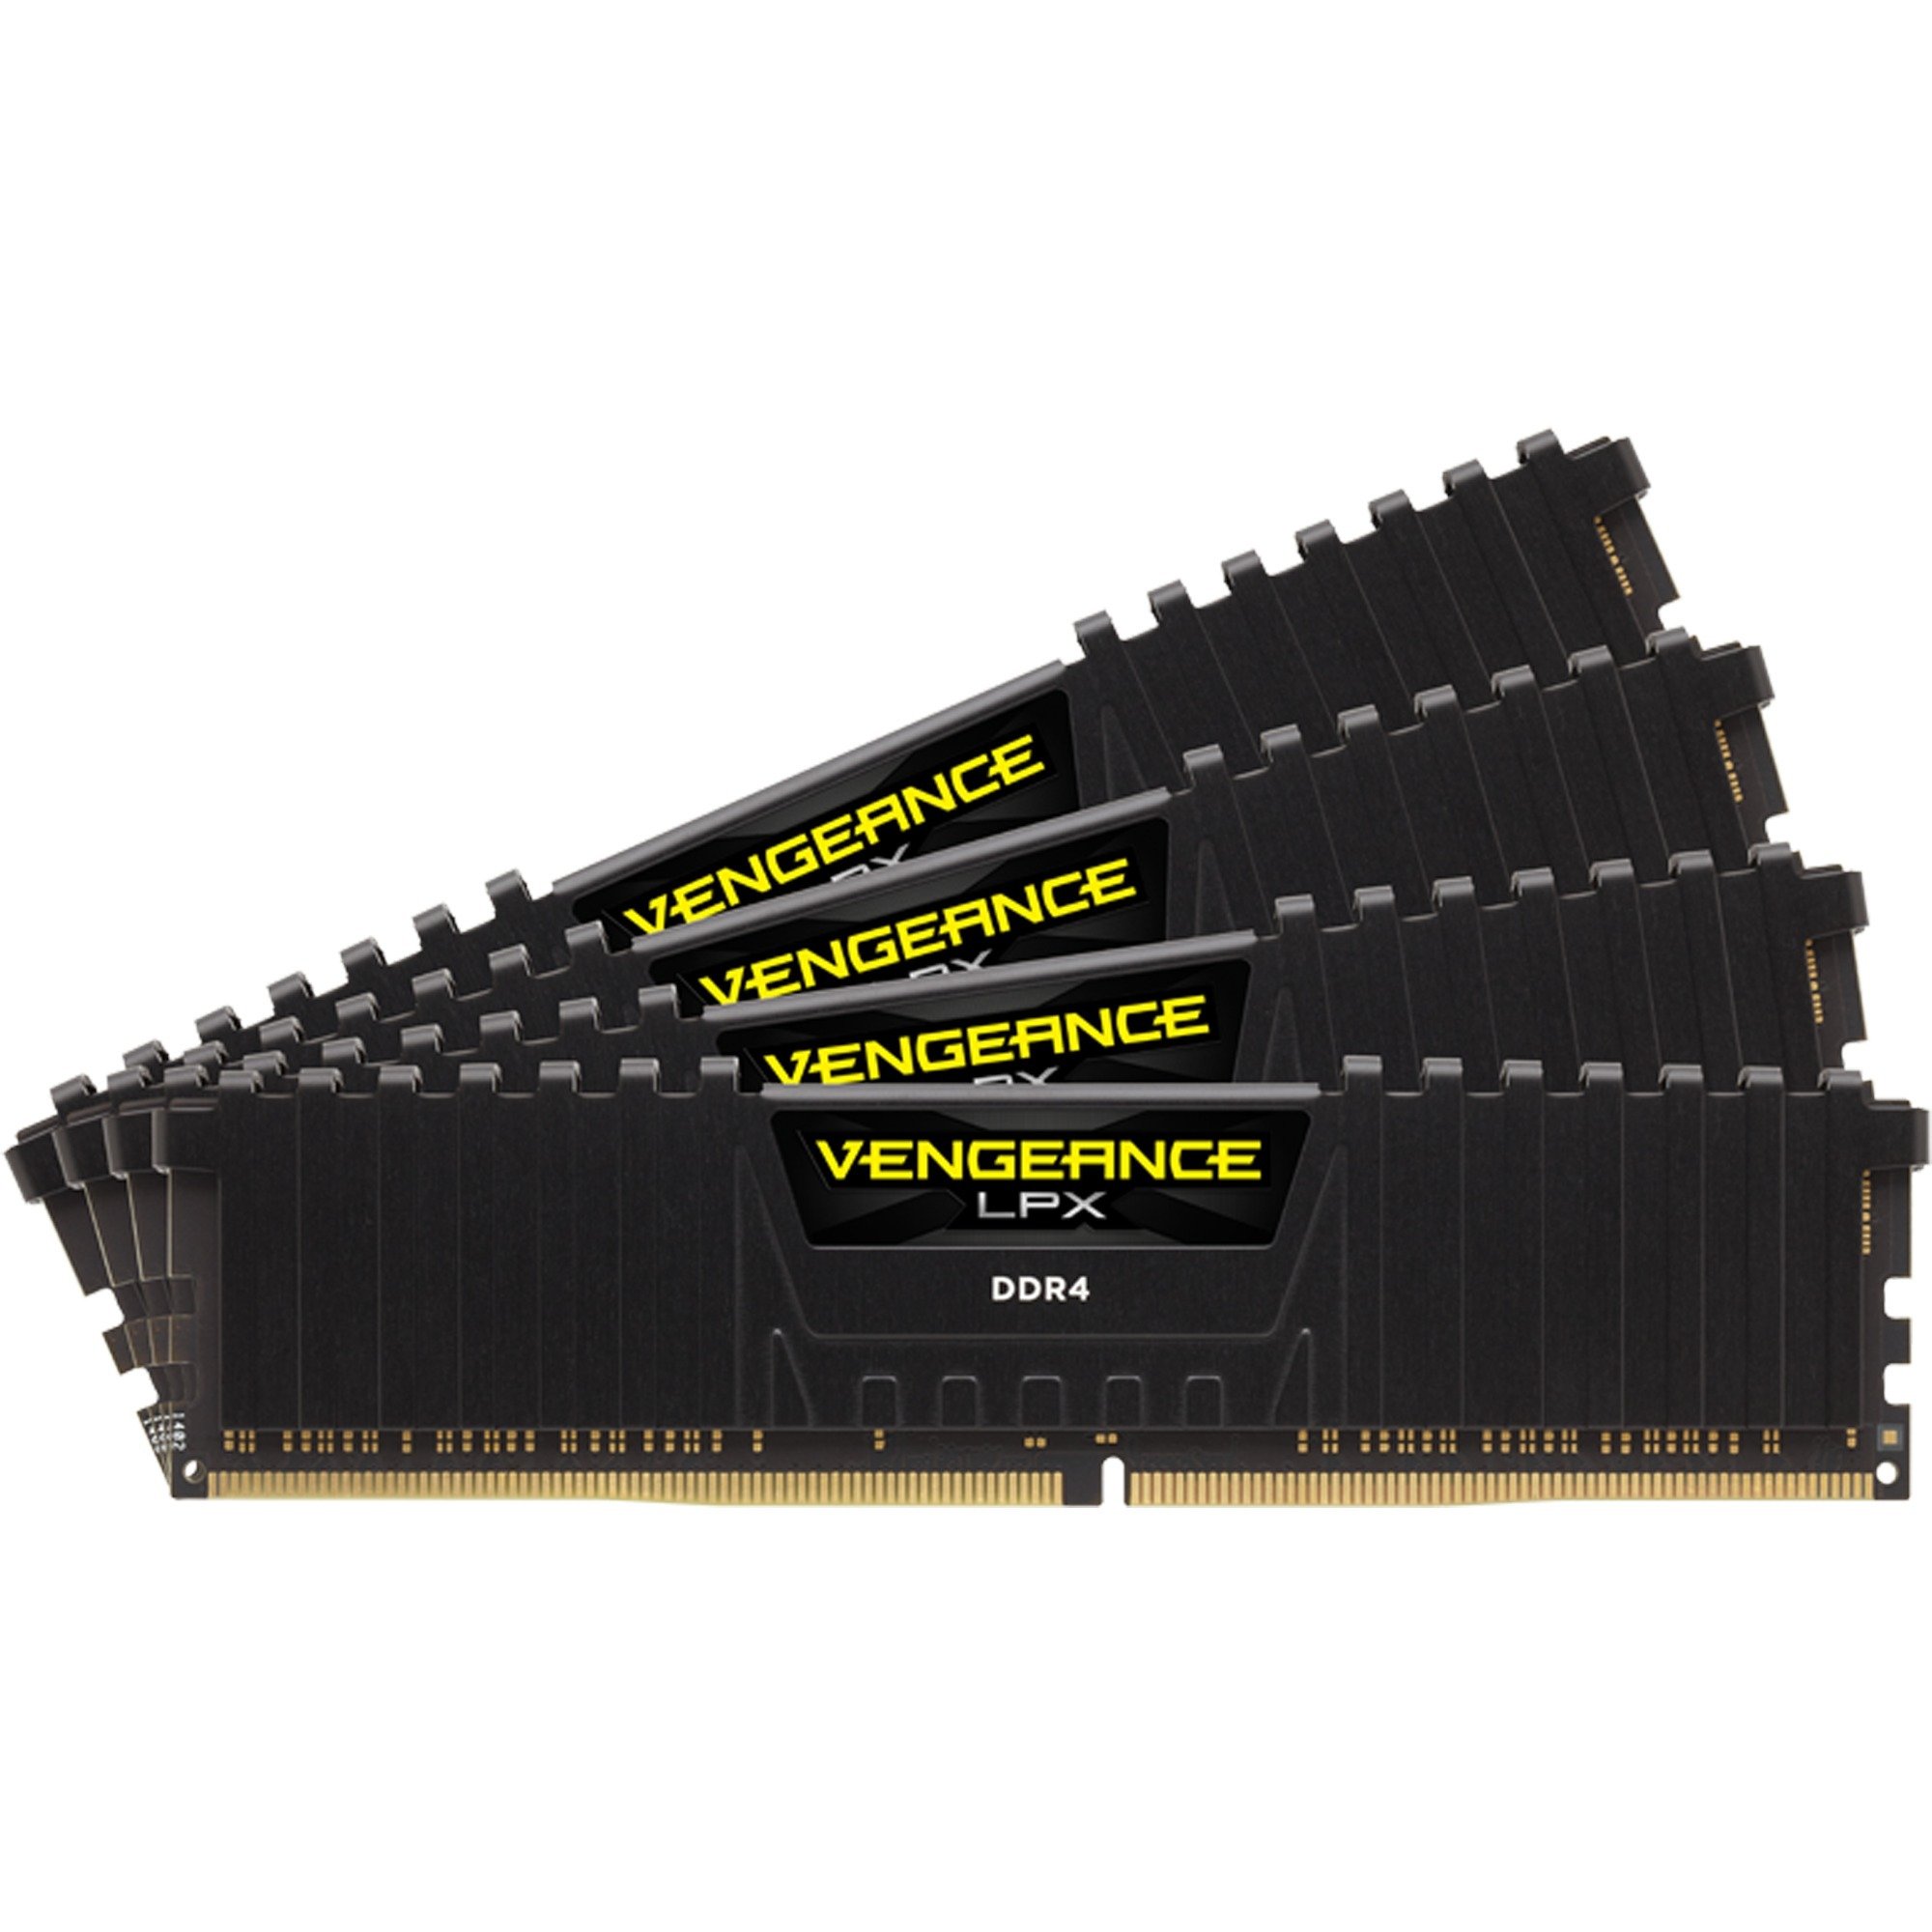 Vengeance LPX moduł pamięci 64 GB DDR4 2133 Mhz, Pamięc operacyjna